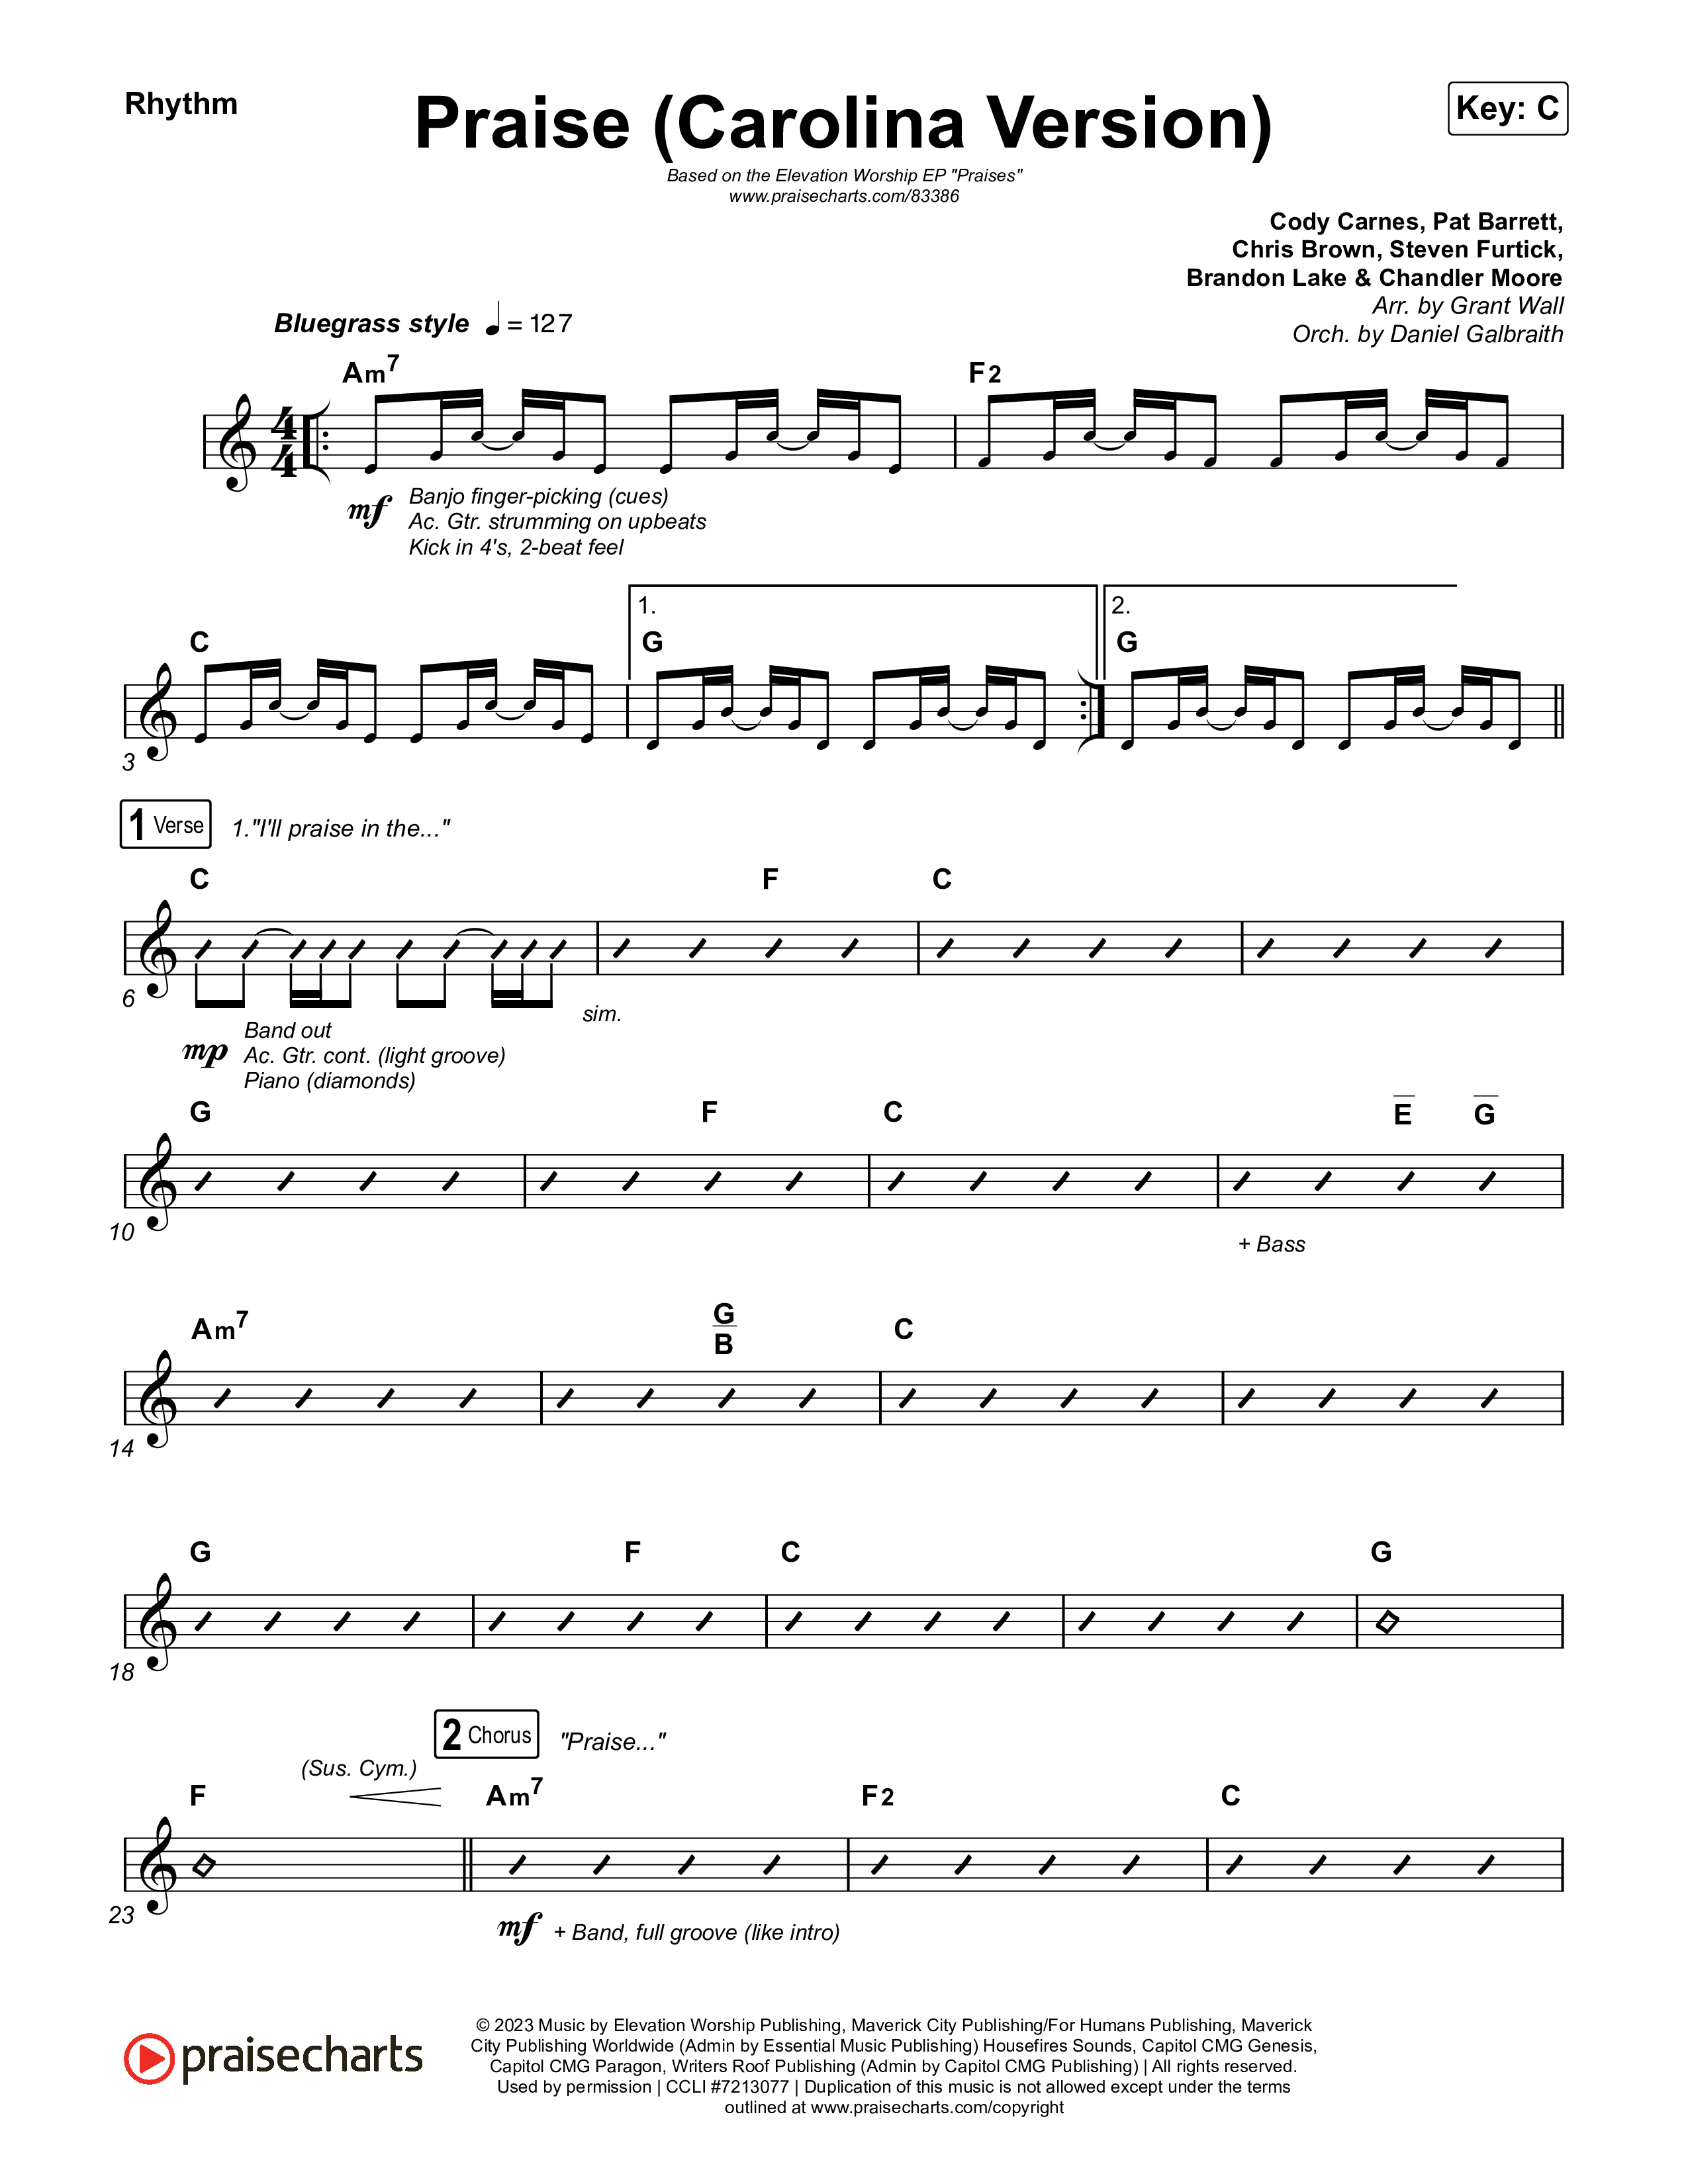 Praise (Carolina Version) Rhythm Chart (Elevation Worship)